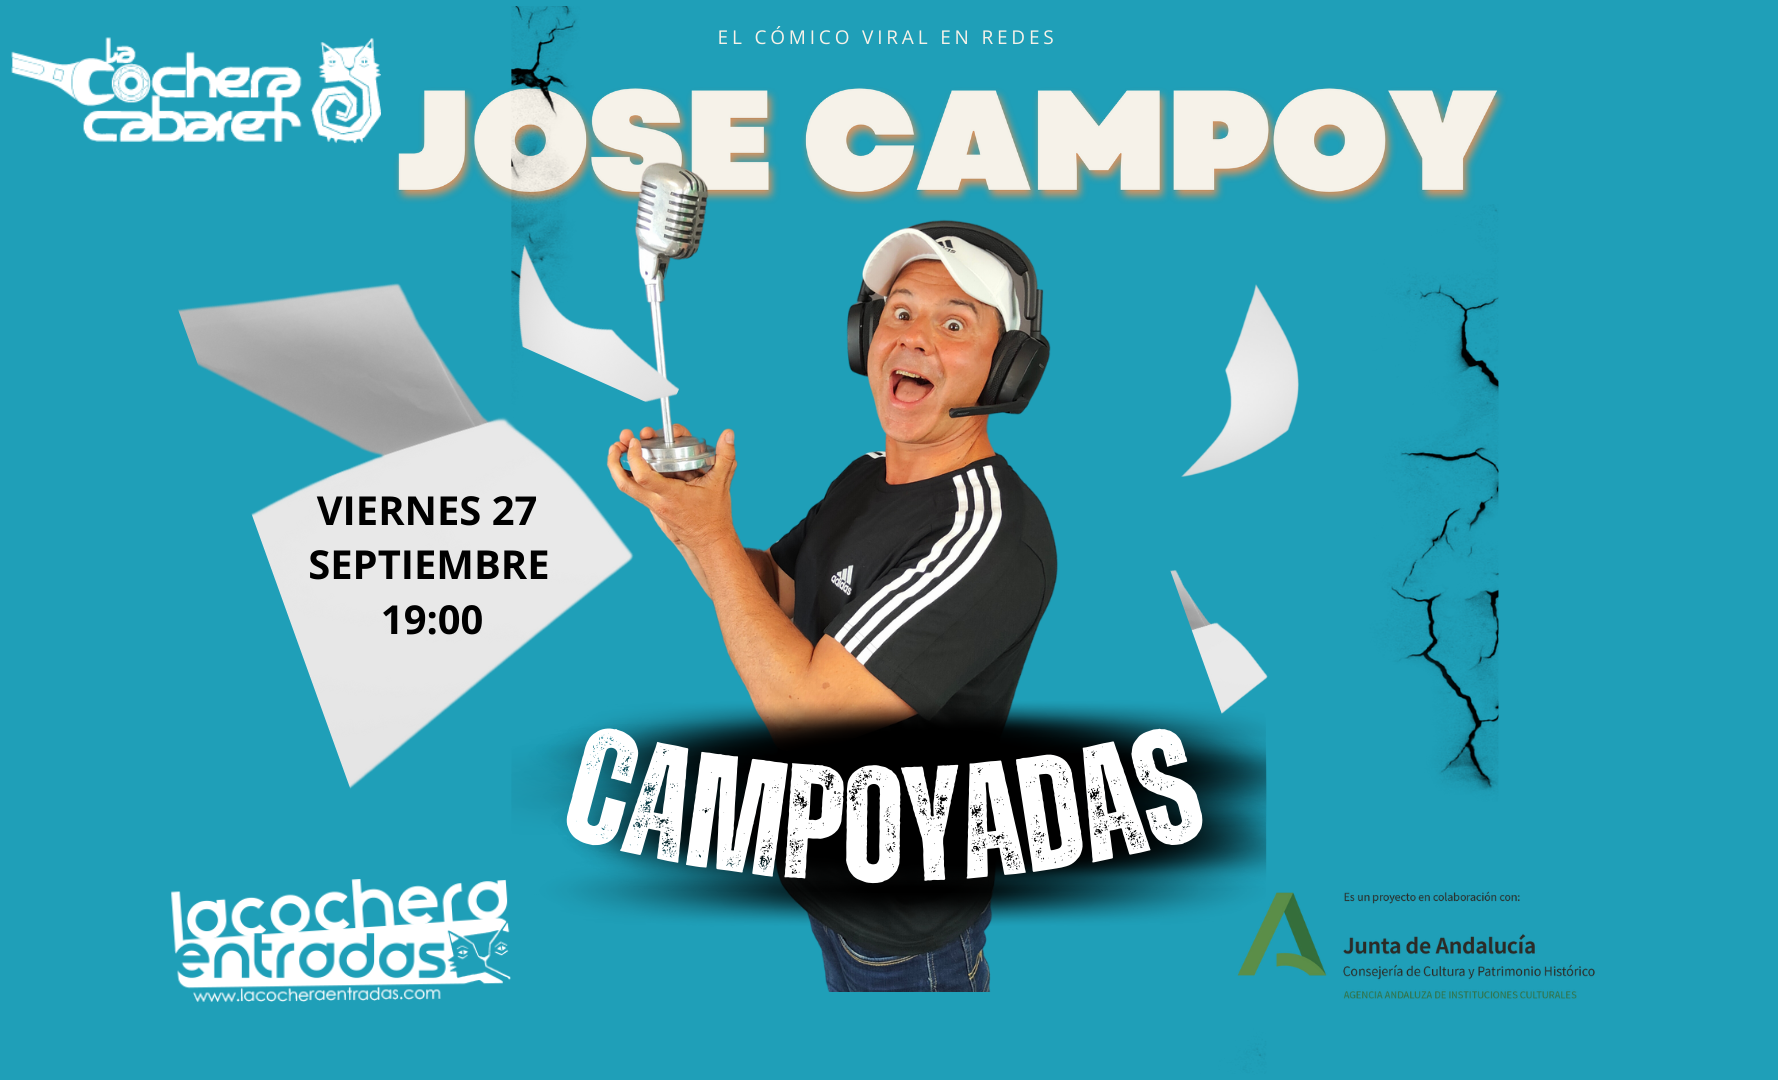 JOSE CAMPOY "CAMPOYADAS"